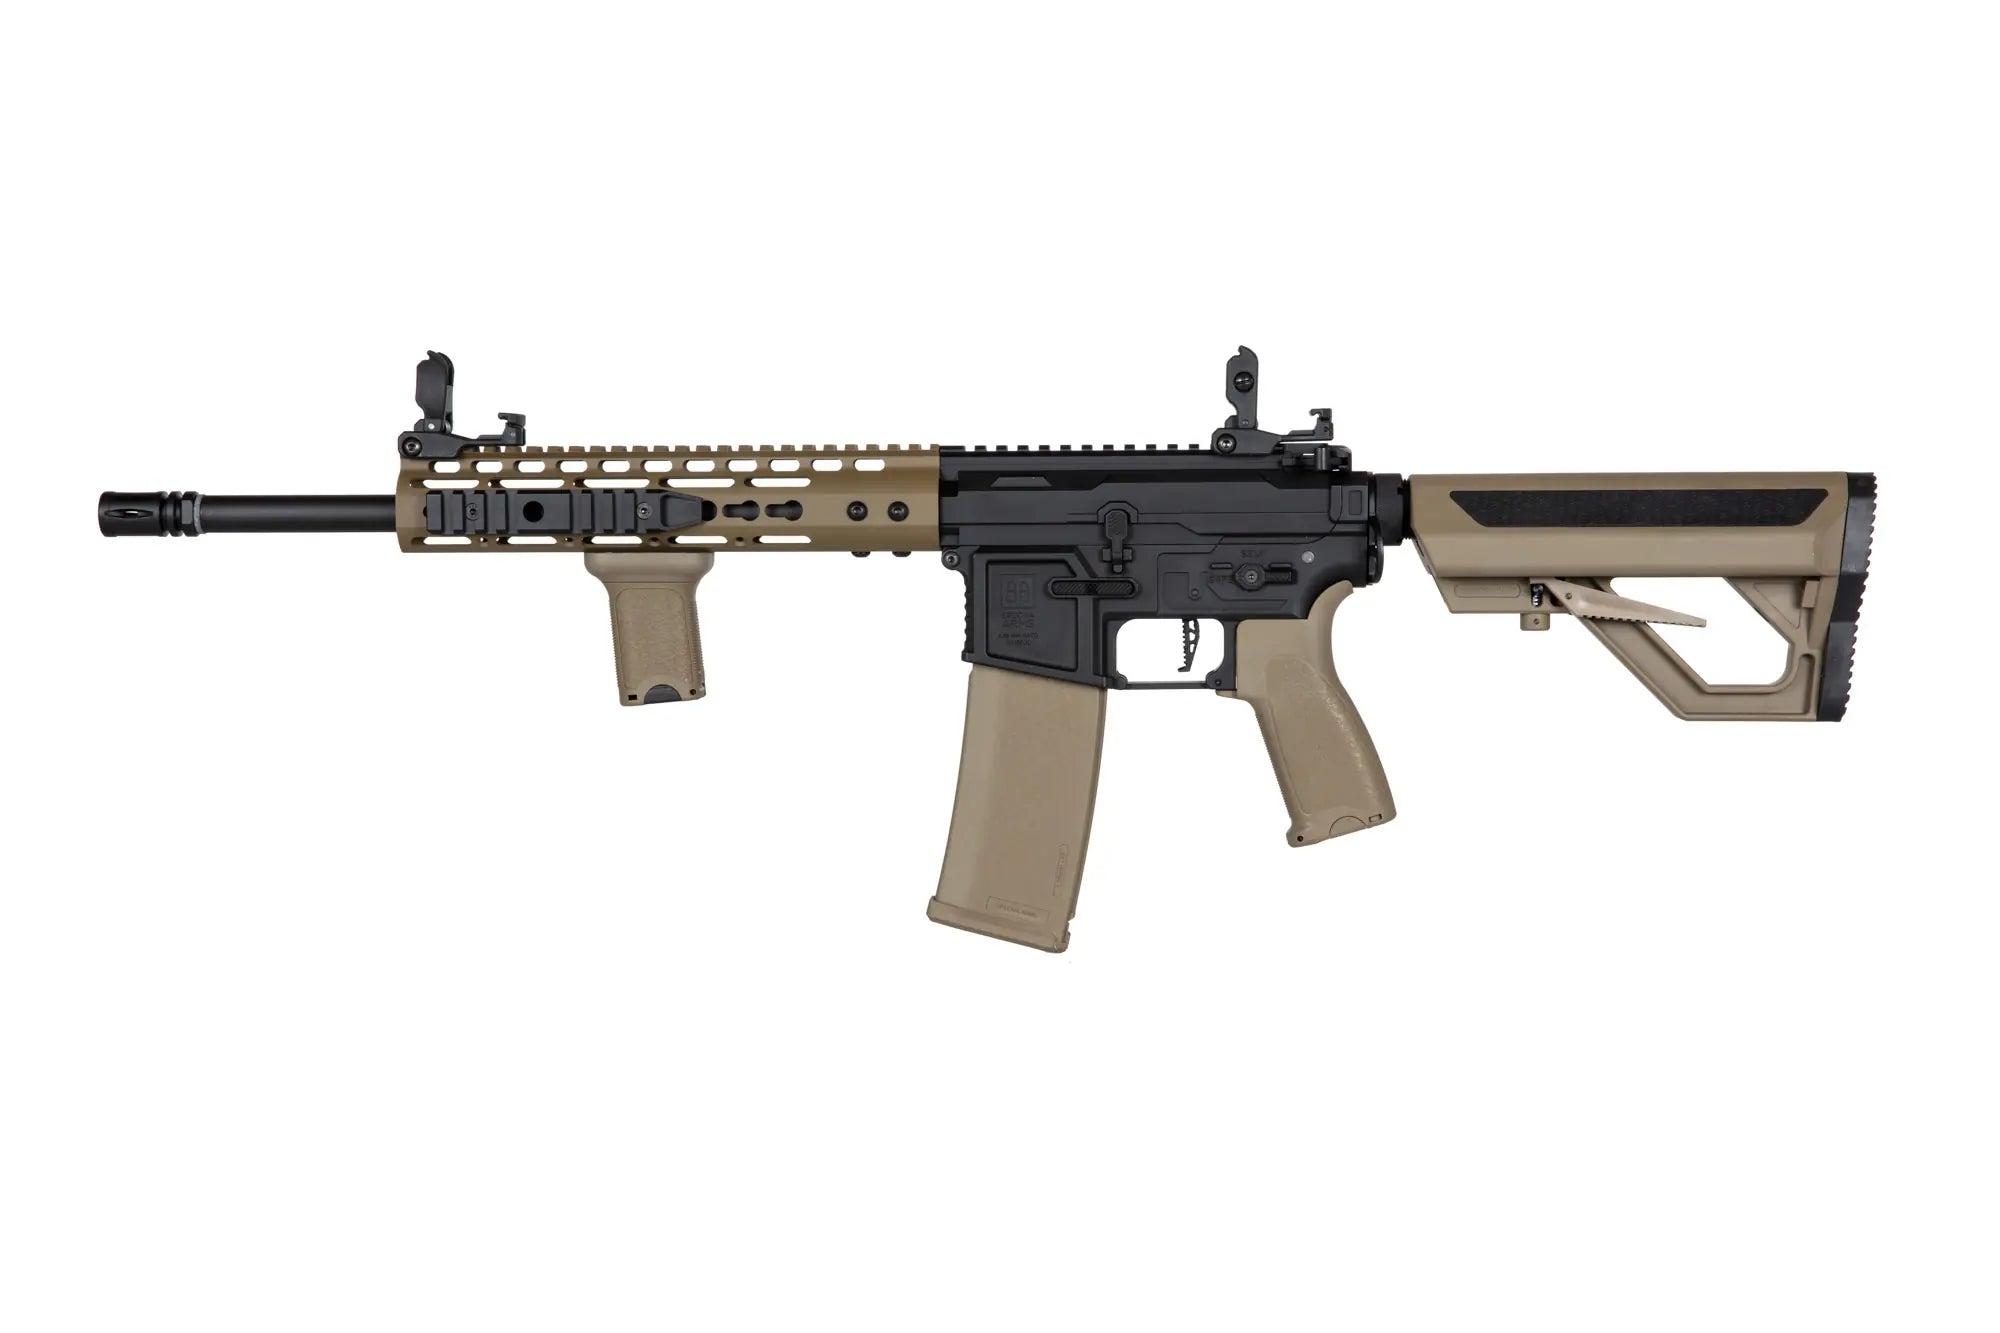 SA-E09-RH EDGE 2.0™ Carbine Replica Heavy Ops Stock - Half Tan